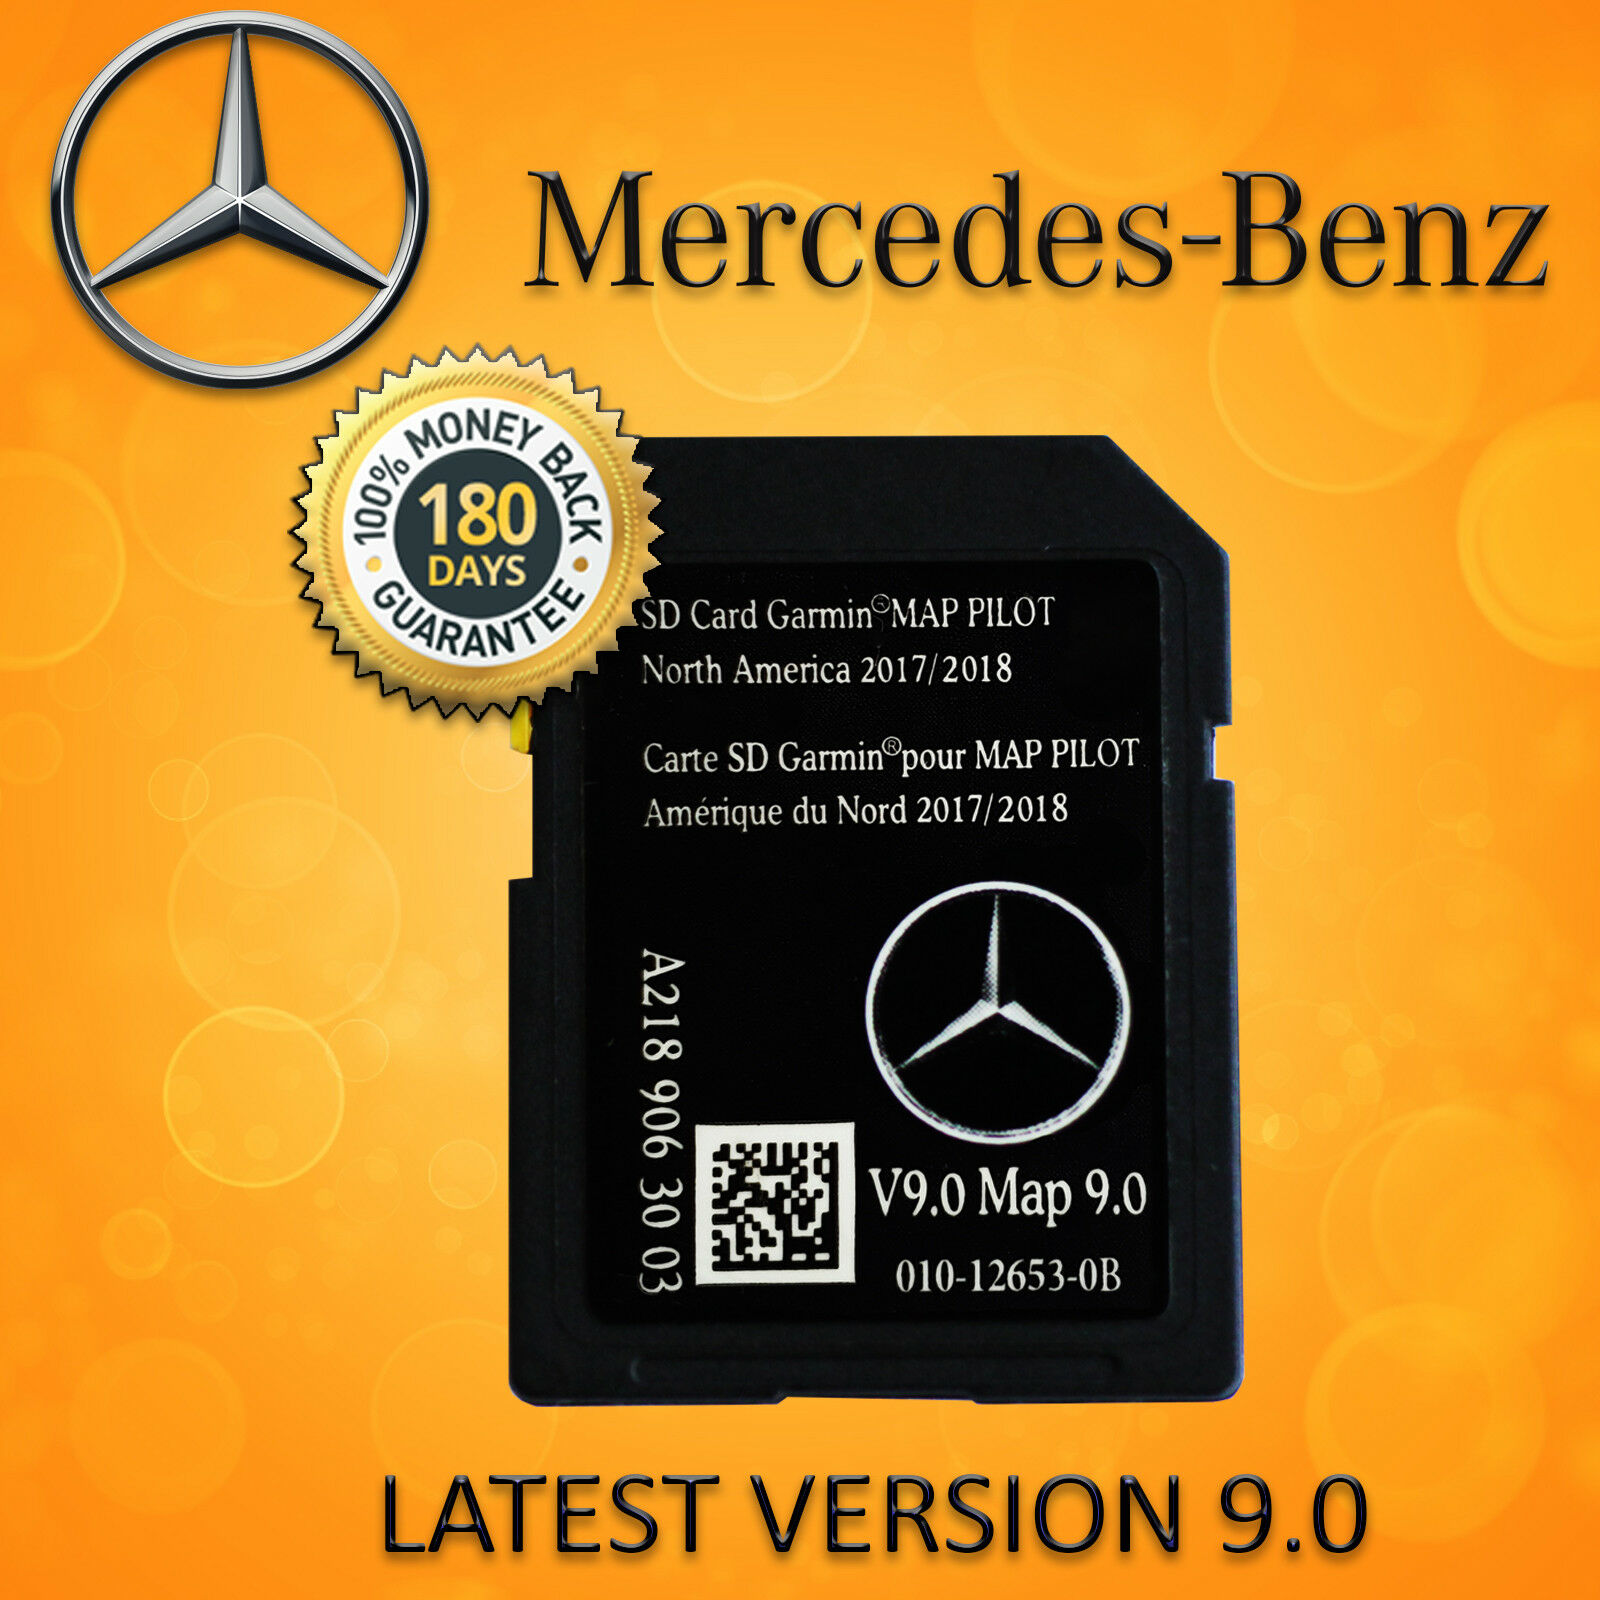 2018 2019 Mercedes-benz Sd Card Gps Navigation Glc C-class Garmin Map Pilot V9.0